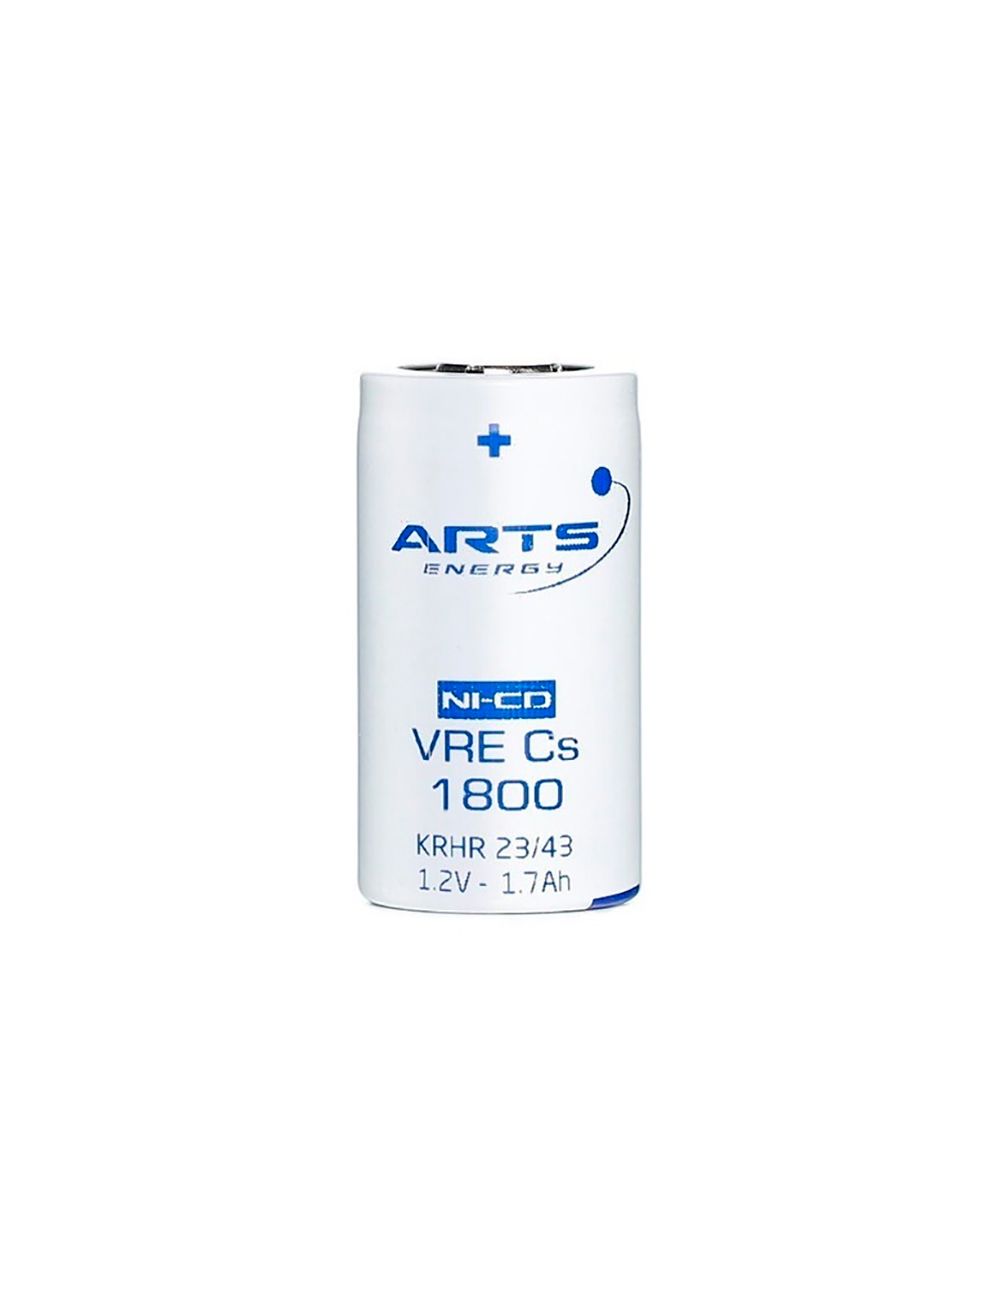 VRE Cs 1800 bateria SubC (Cs) 1,2V 1800mAh Ni-Cd Arts Energy série VRE alta descarga y carregamento rápido - 1